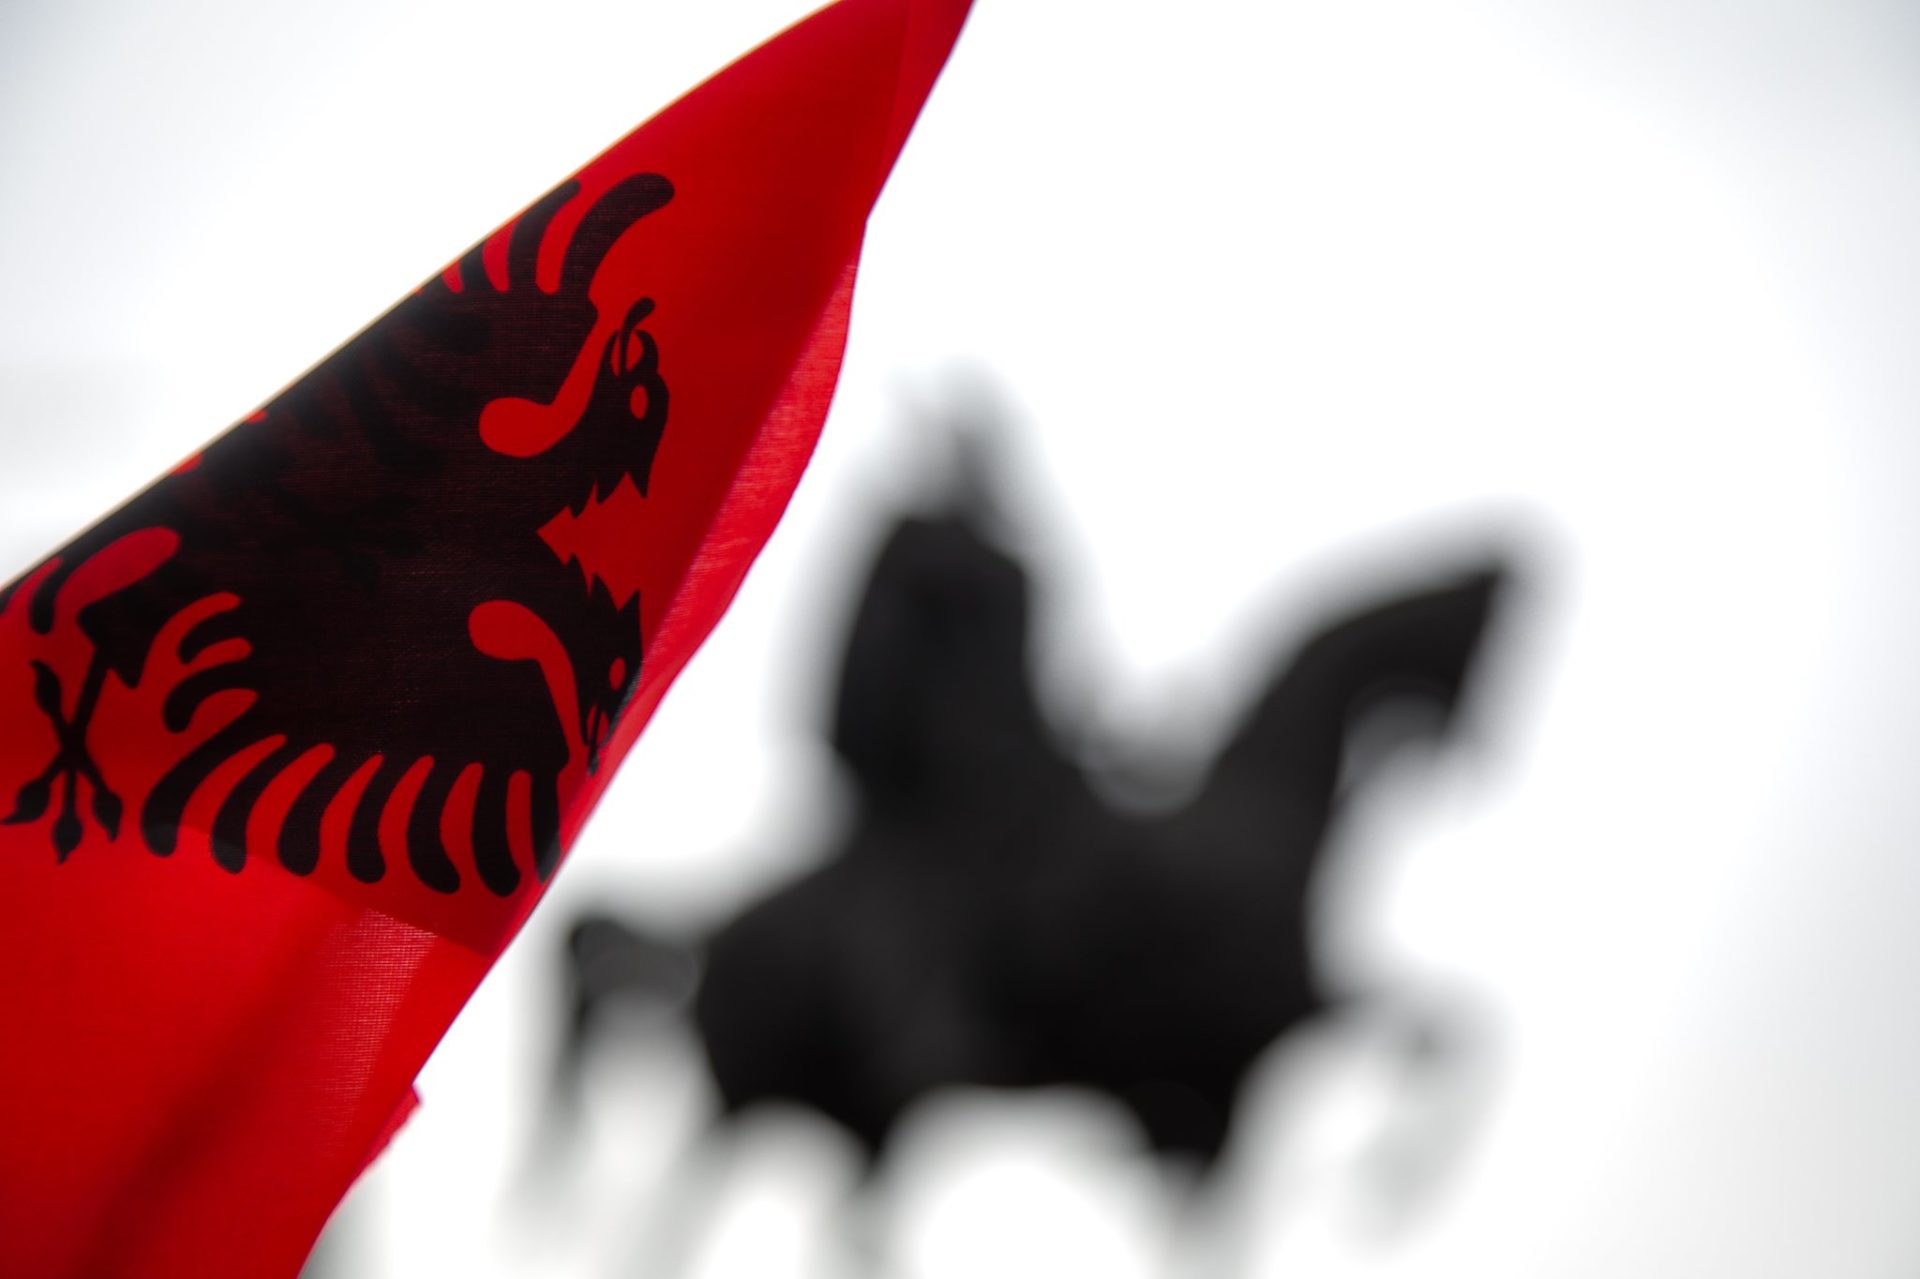 Bandiera albanese e la statua di Scanderbeg